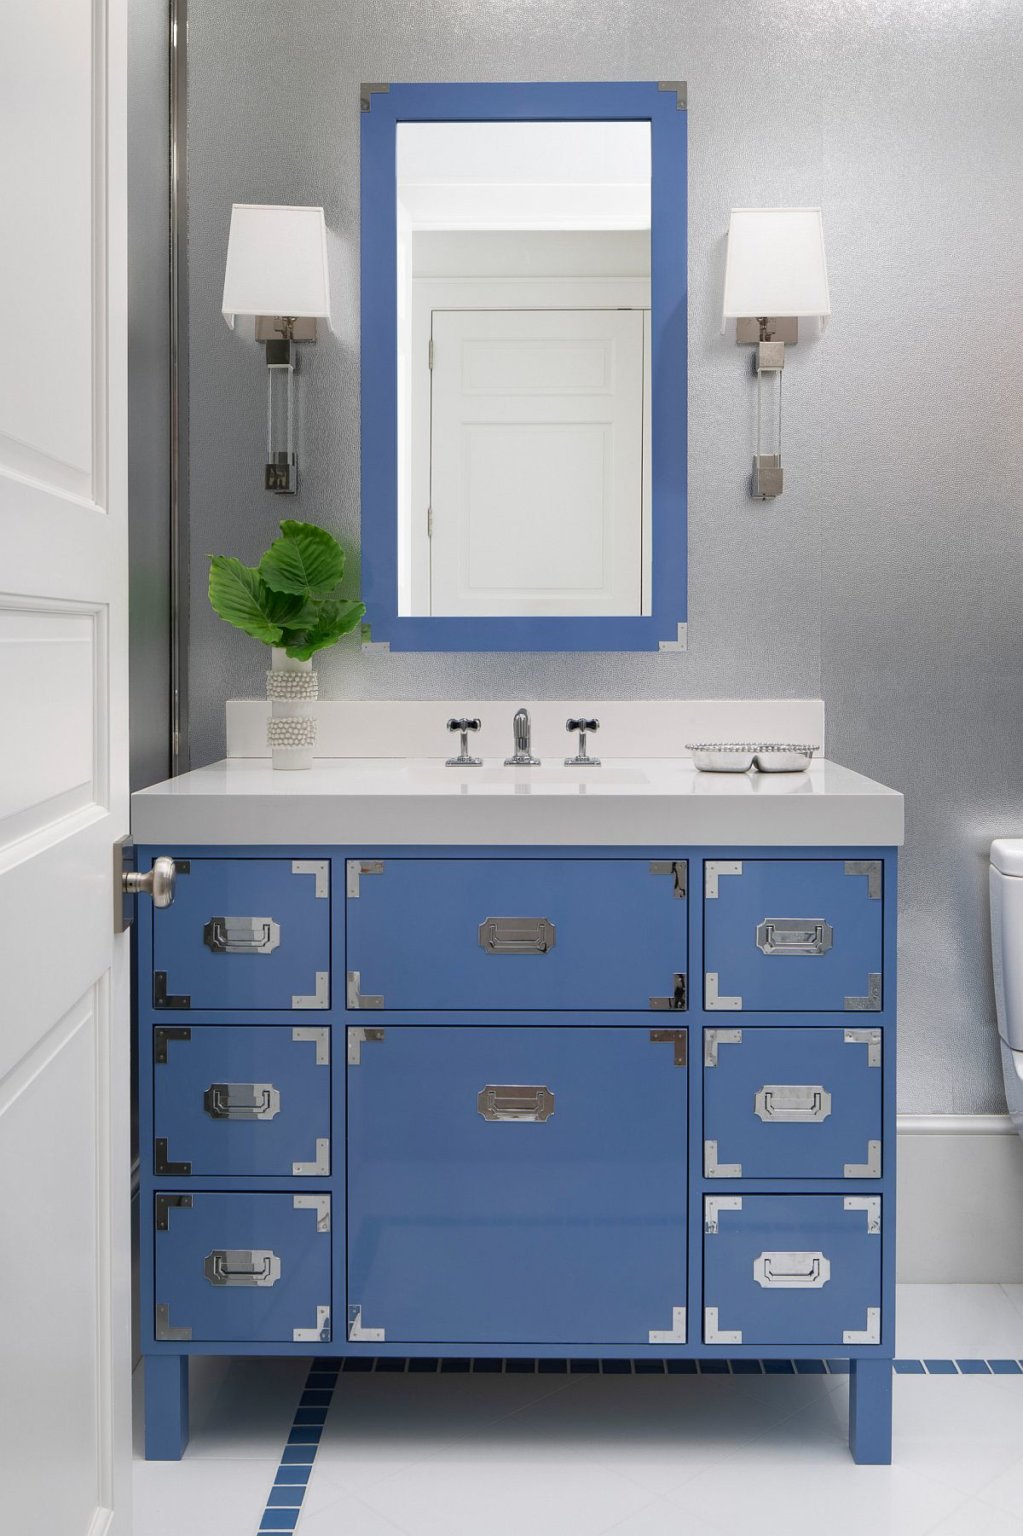 Hình ảnh phòng tắm hiện đại, dịu mắt với khung gương và tủ ngăn kéo màu xanh dương nhẹ nhàng.